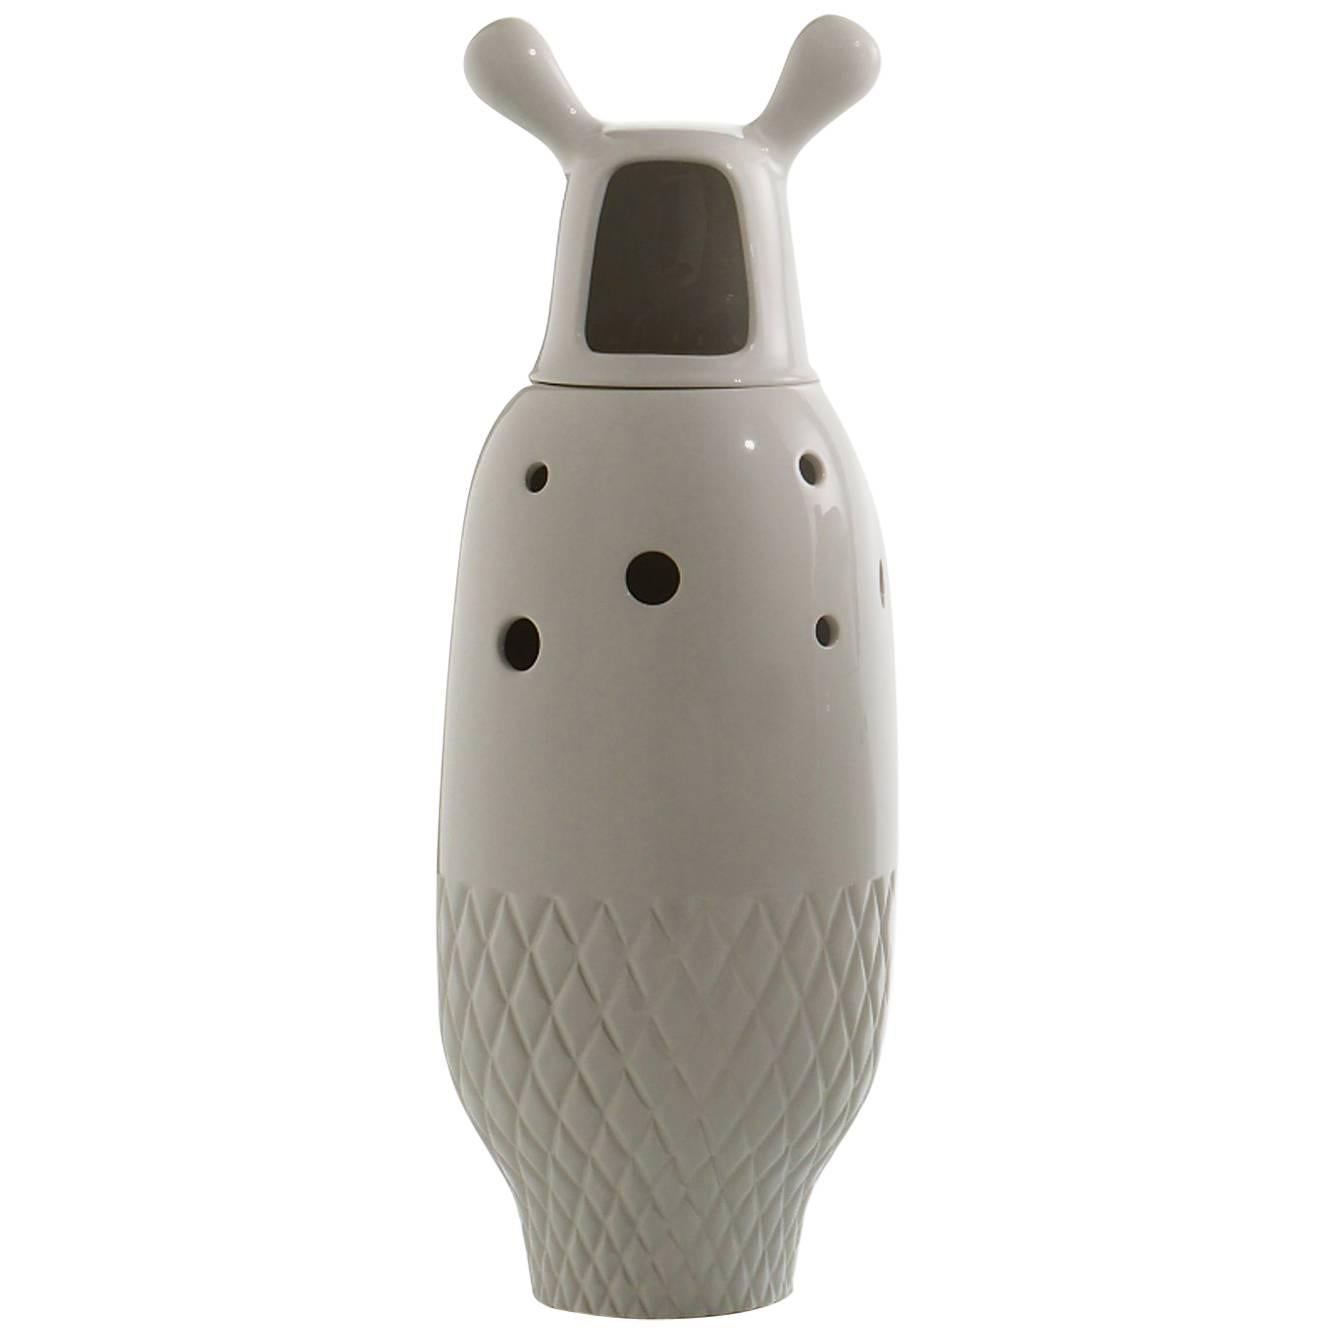 Nº 5 Zeitgenössische Vase Showtime aus glasierter Keramik, weiß, von Jaime Hayon Spanien